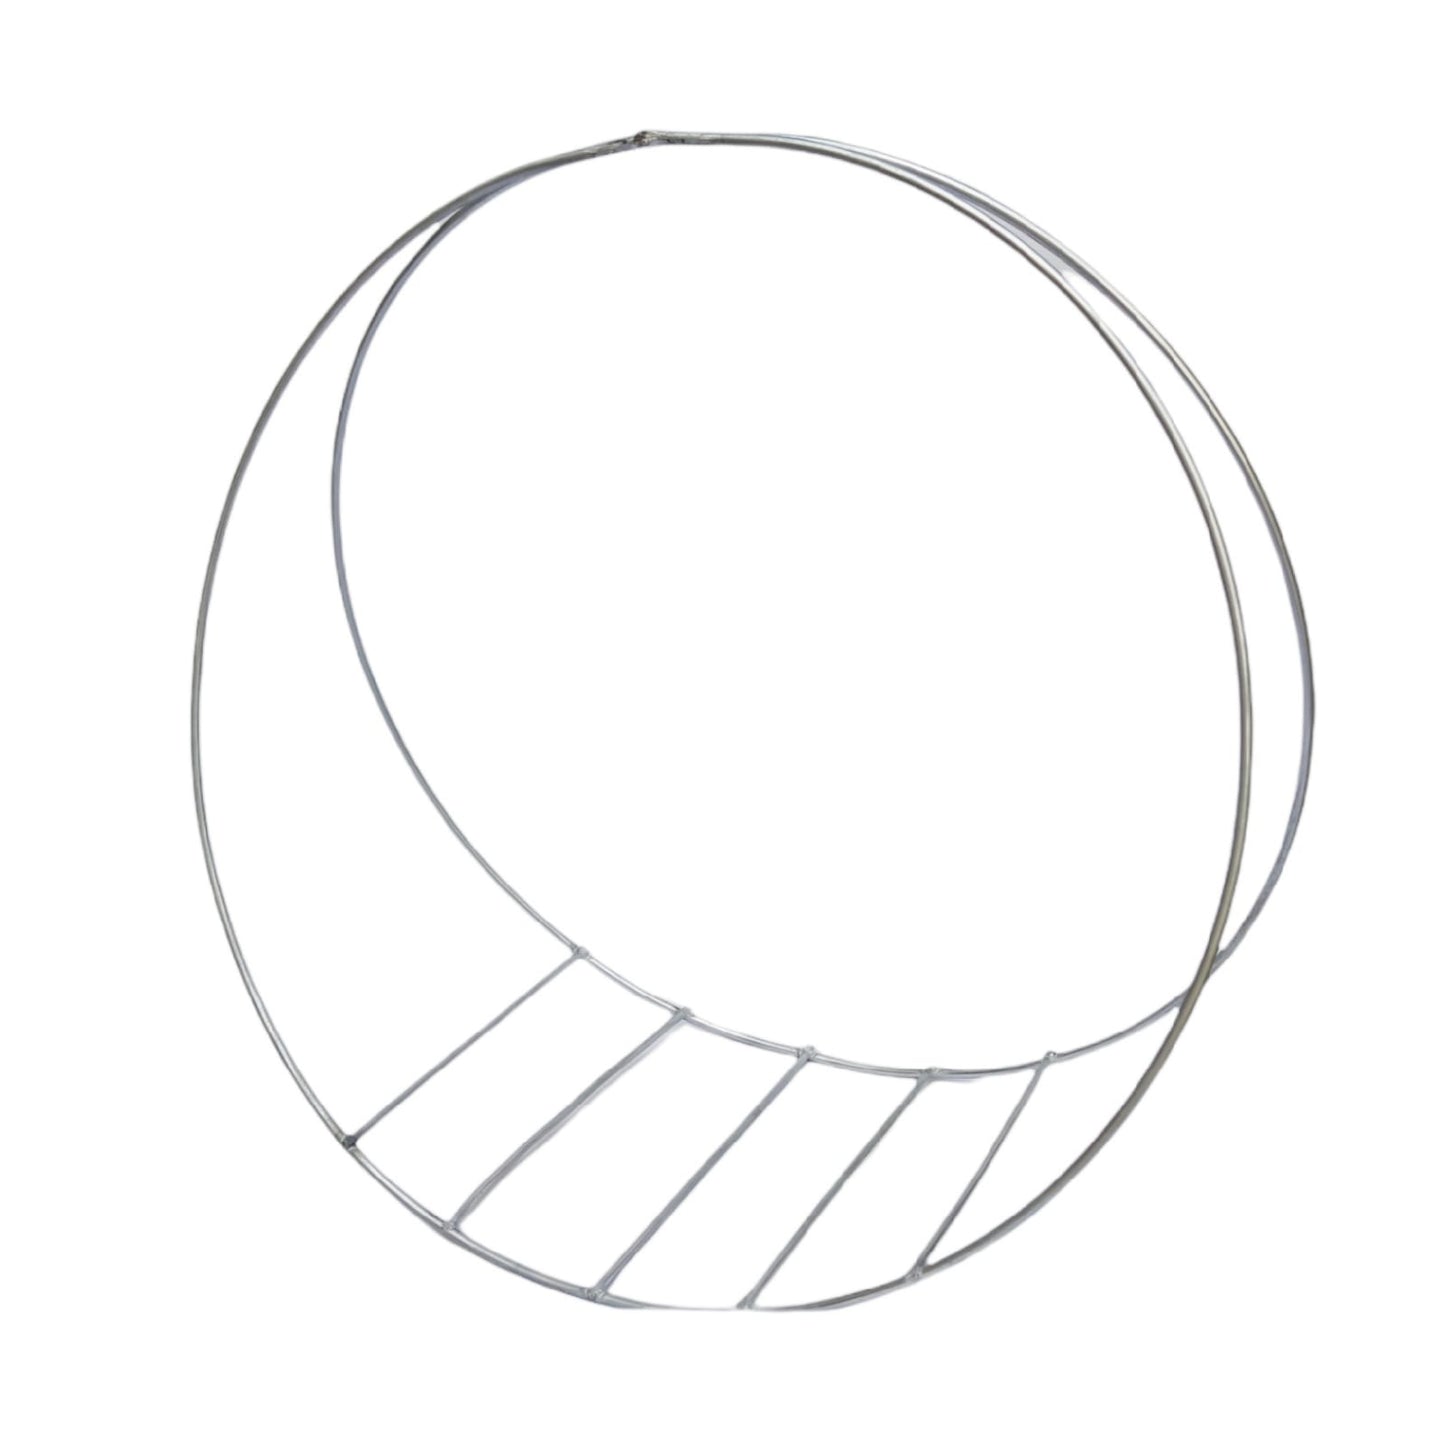 Base doble círculo